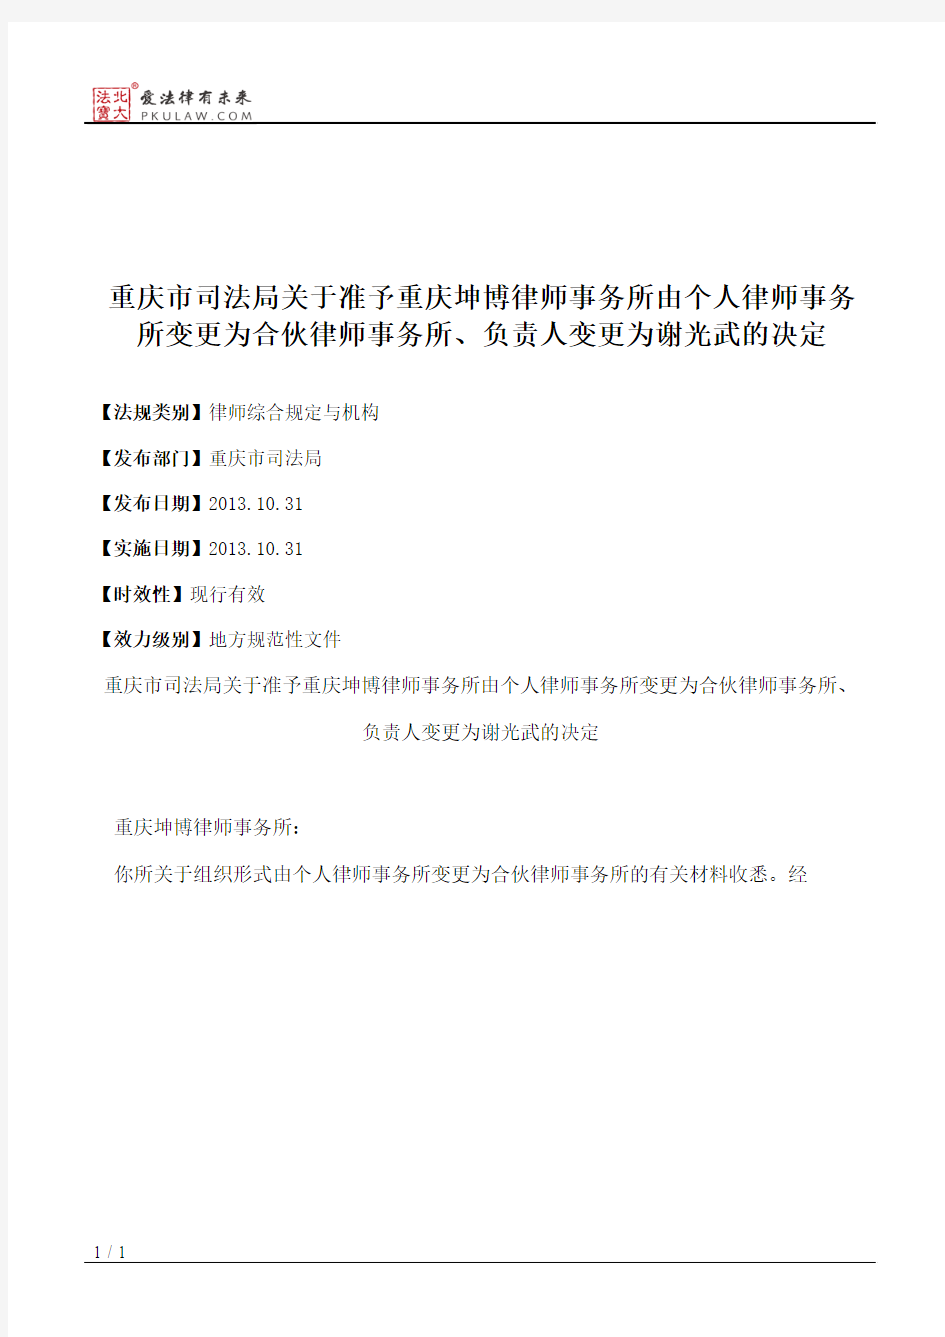 重庆市司法局关于准予重庆坤博律师事务所由个人律师事务所变更为